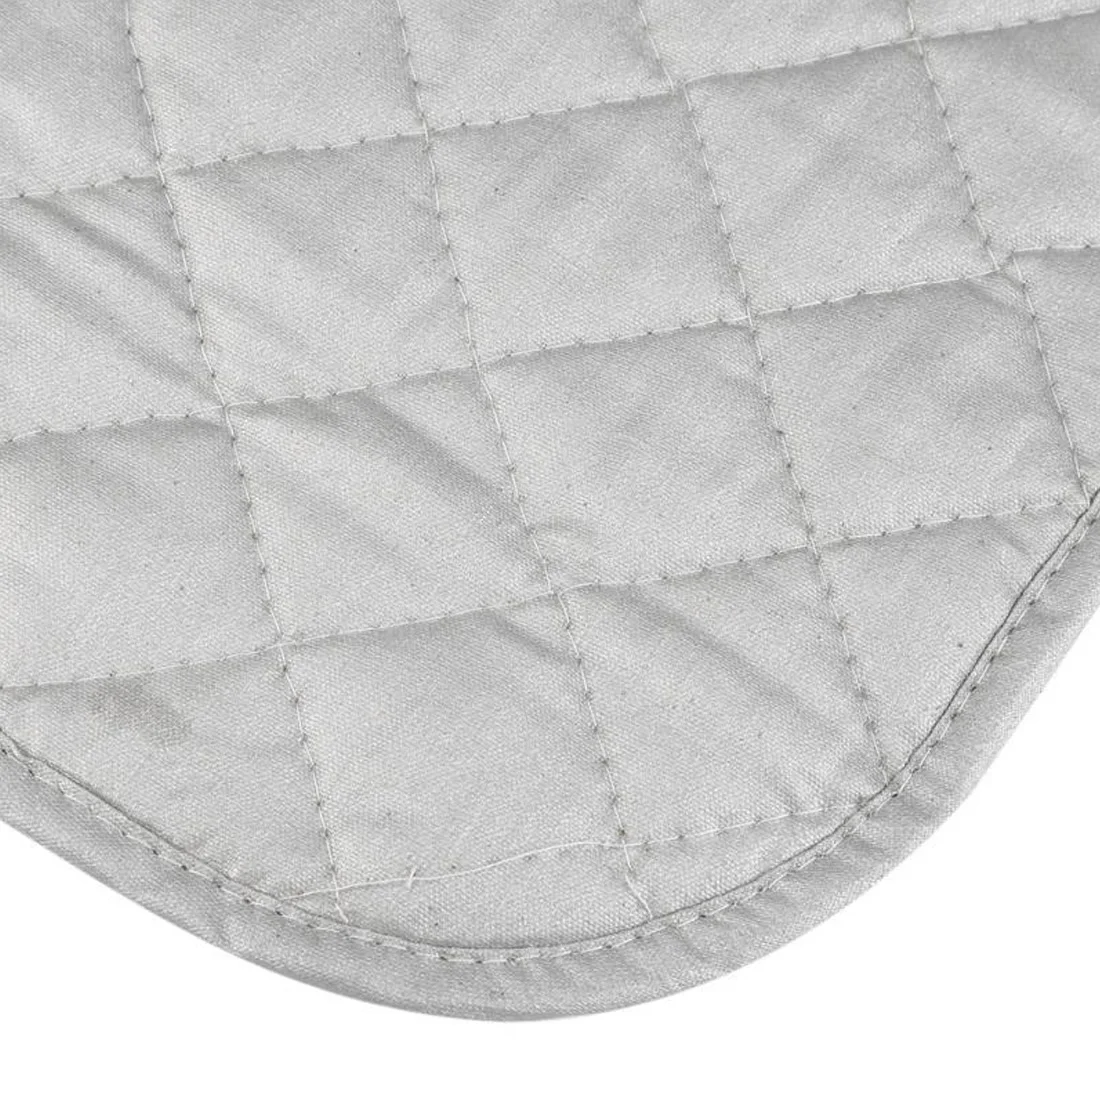 Магнитный гладильный коврик сушилка покрытие доска термостойкие одеяло сетки пресс одежда защиты протектор